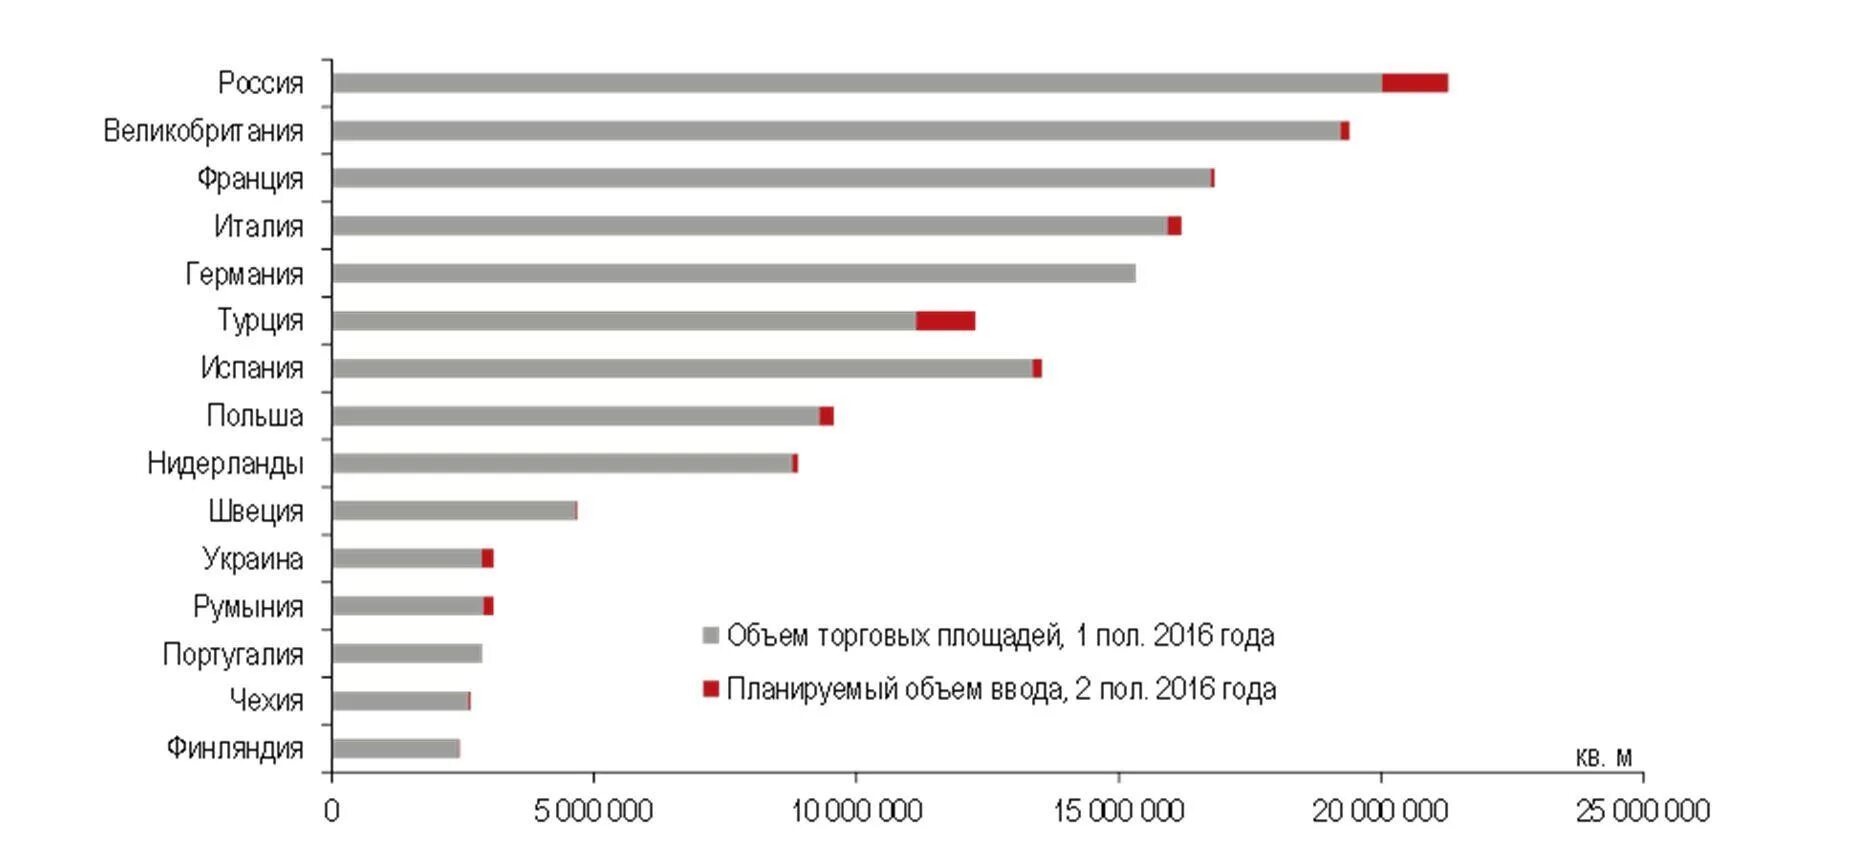 Количество торговых центров в России. Объем торговой площади. Количество квадратных метров на человека по странам. Площадь торговых центров в России.